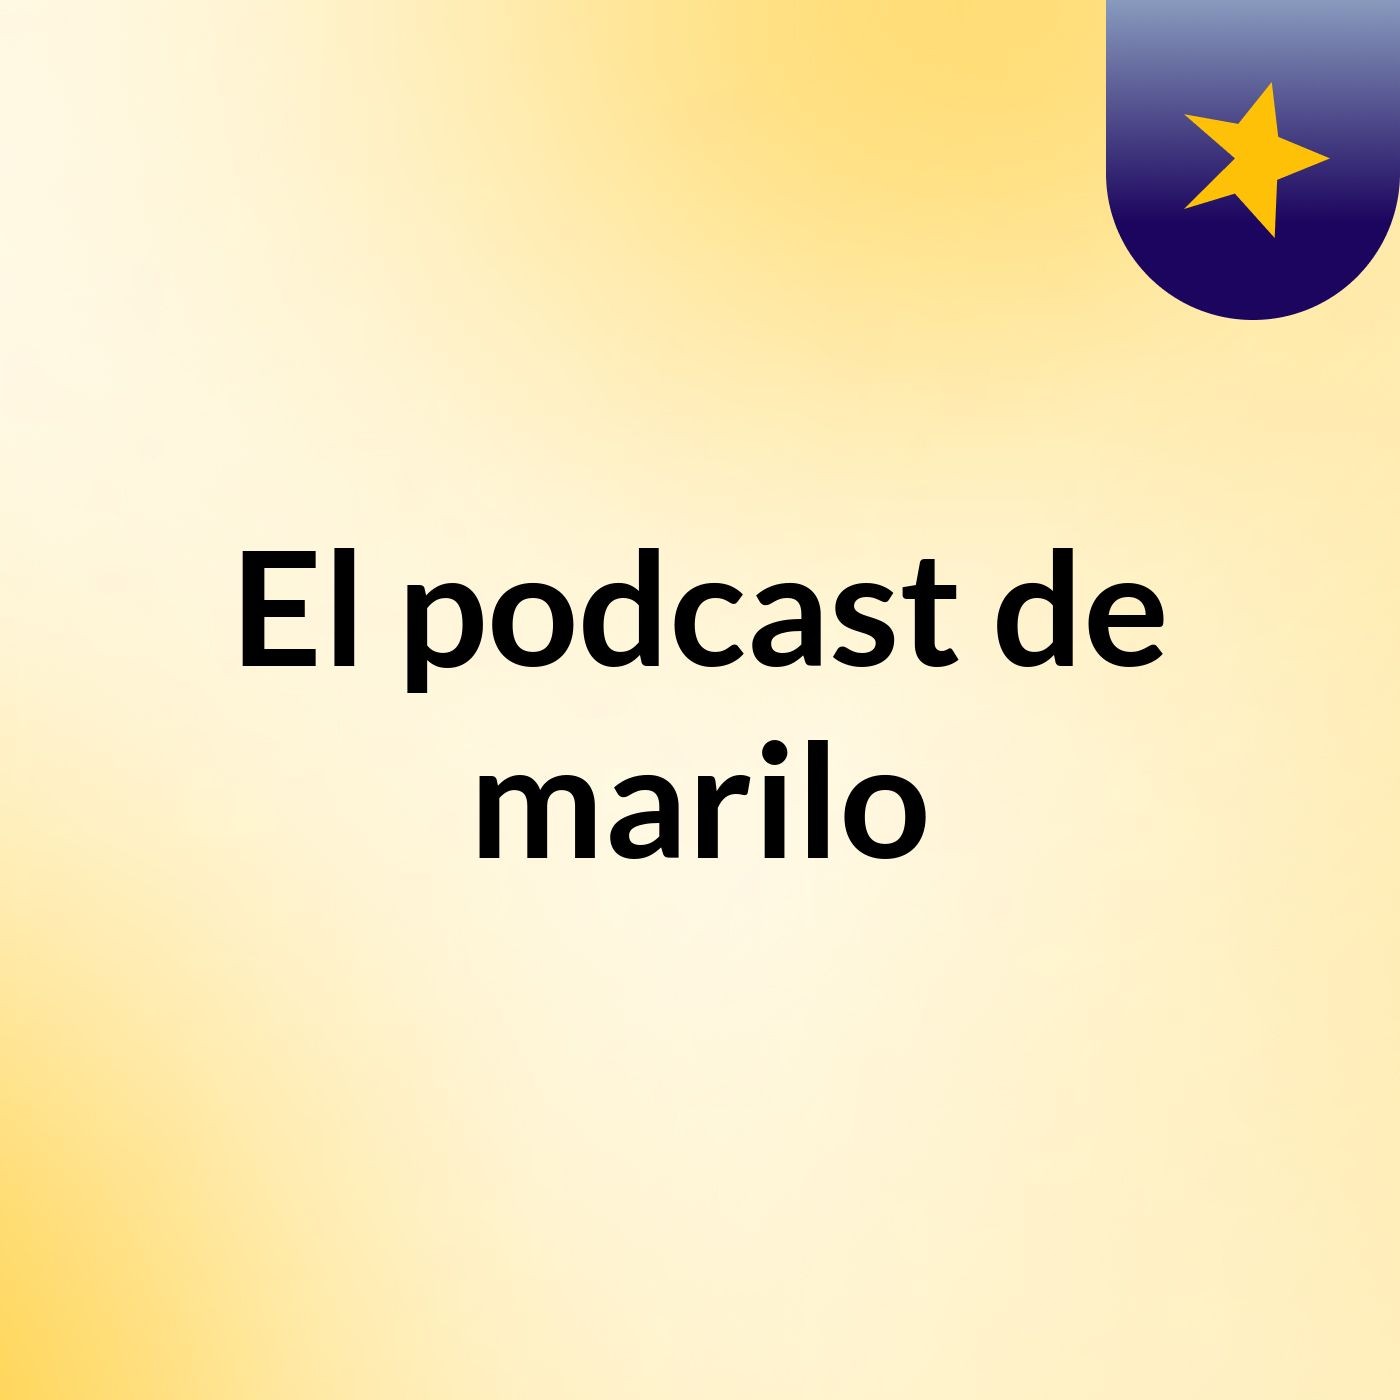 El podcast de marilo